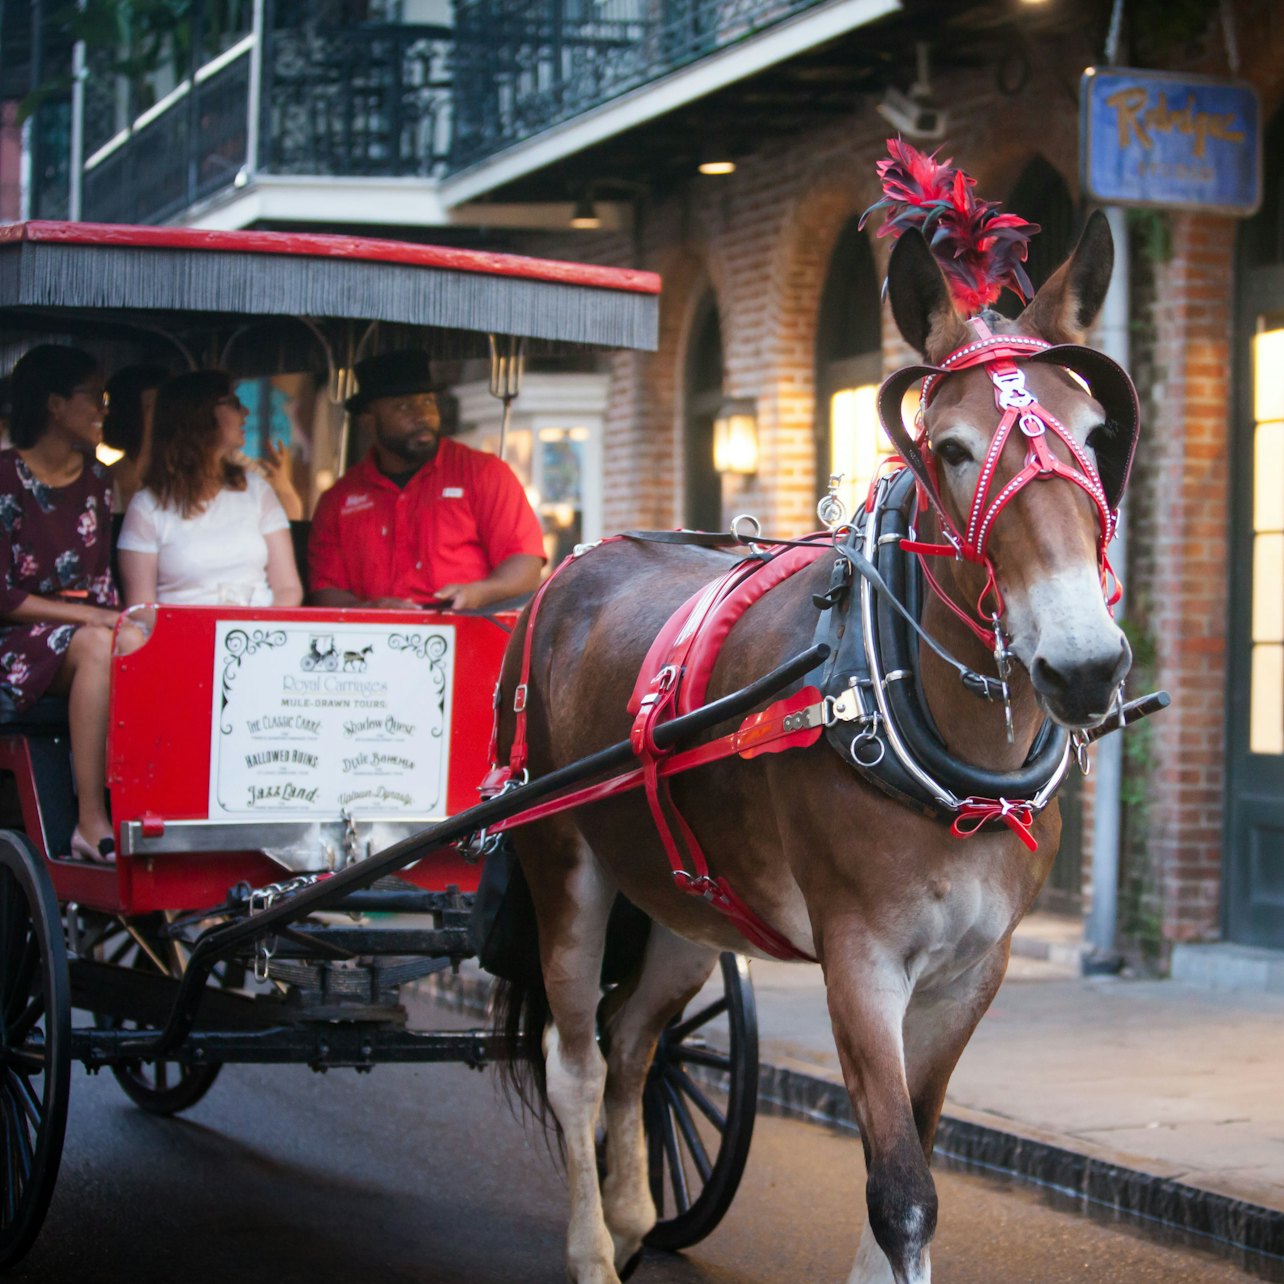 Tour fantasmal del Barrio Francés en carruaje - Alojamientos en Nueva Orleans